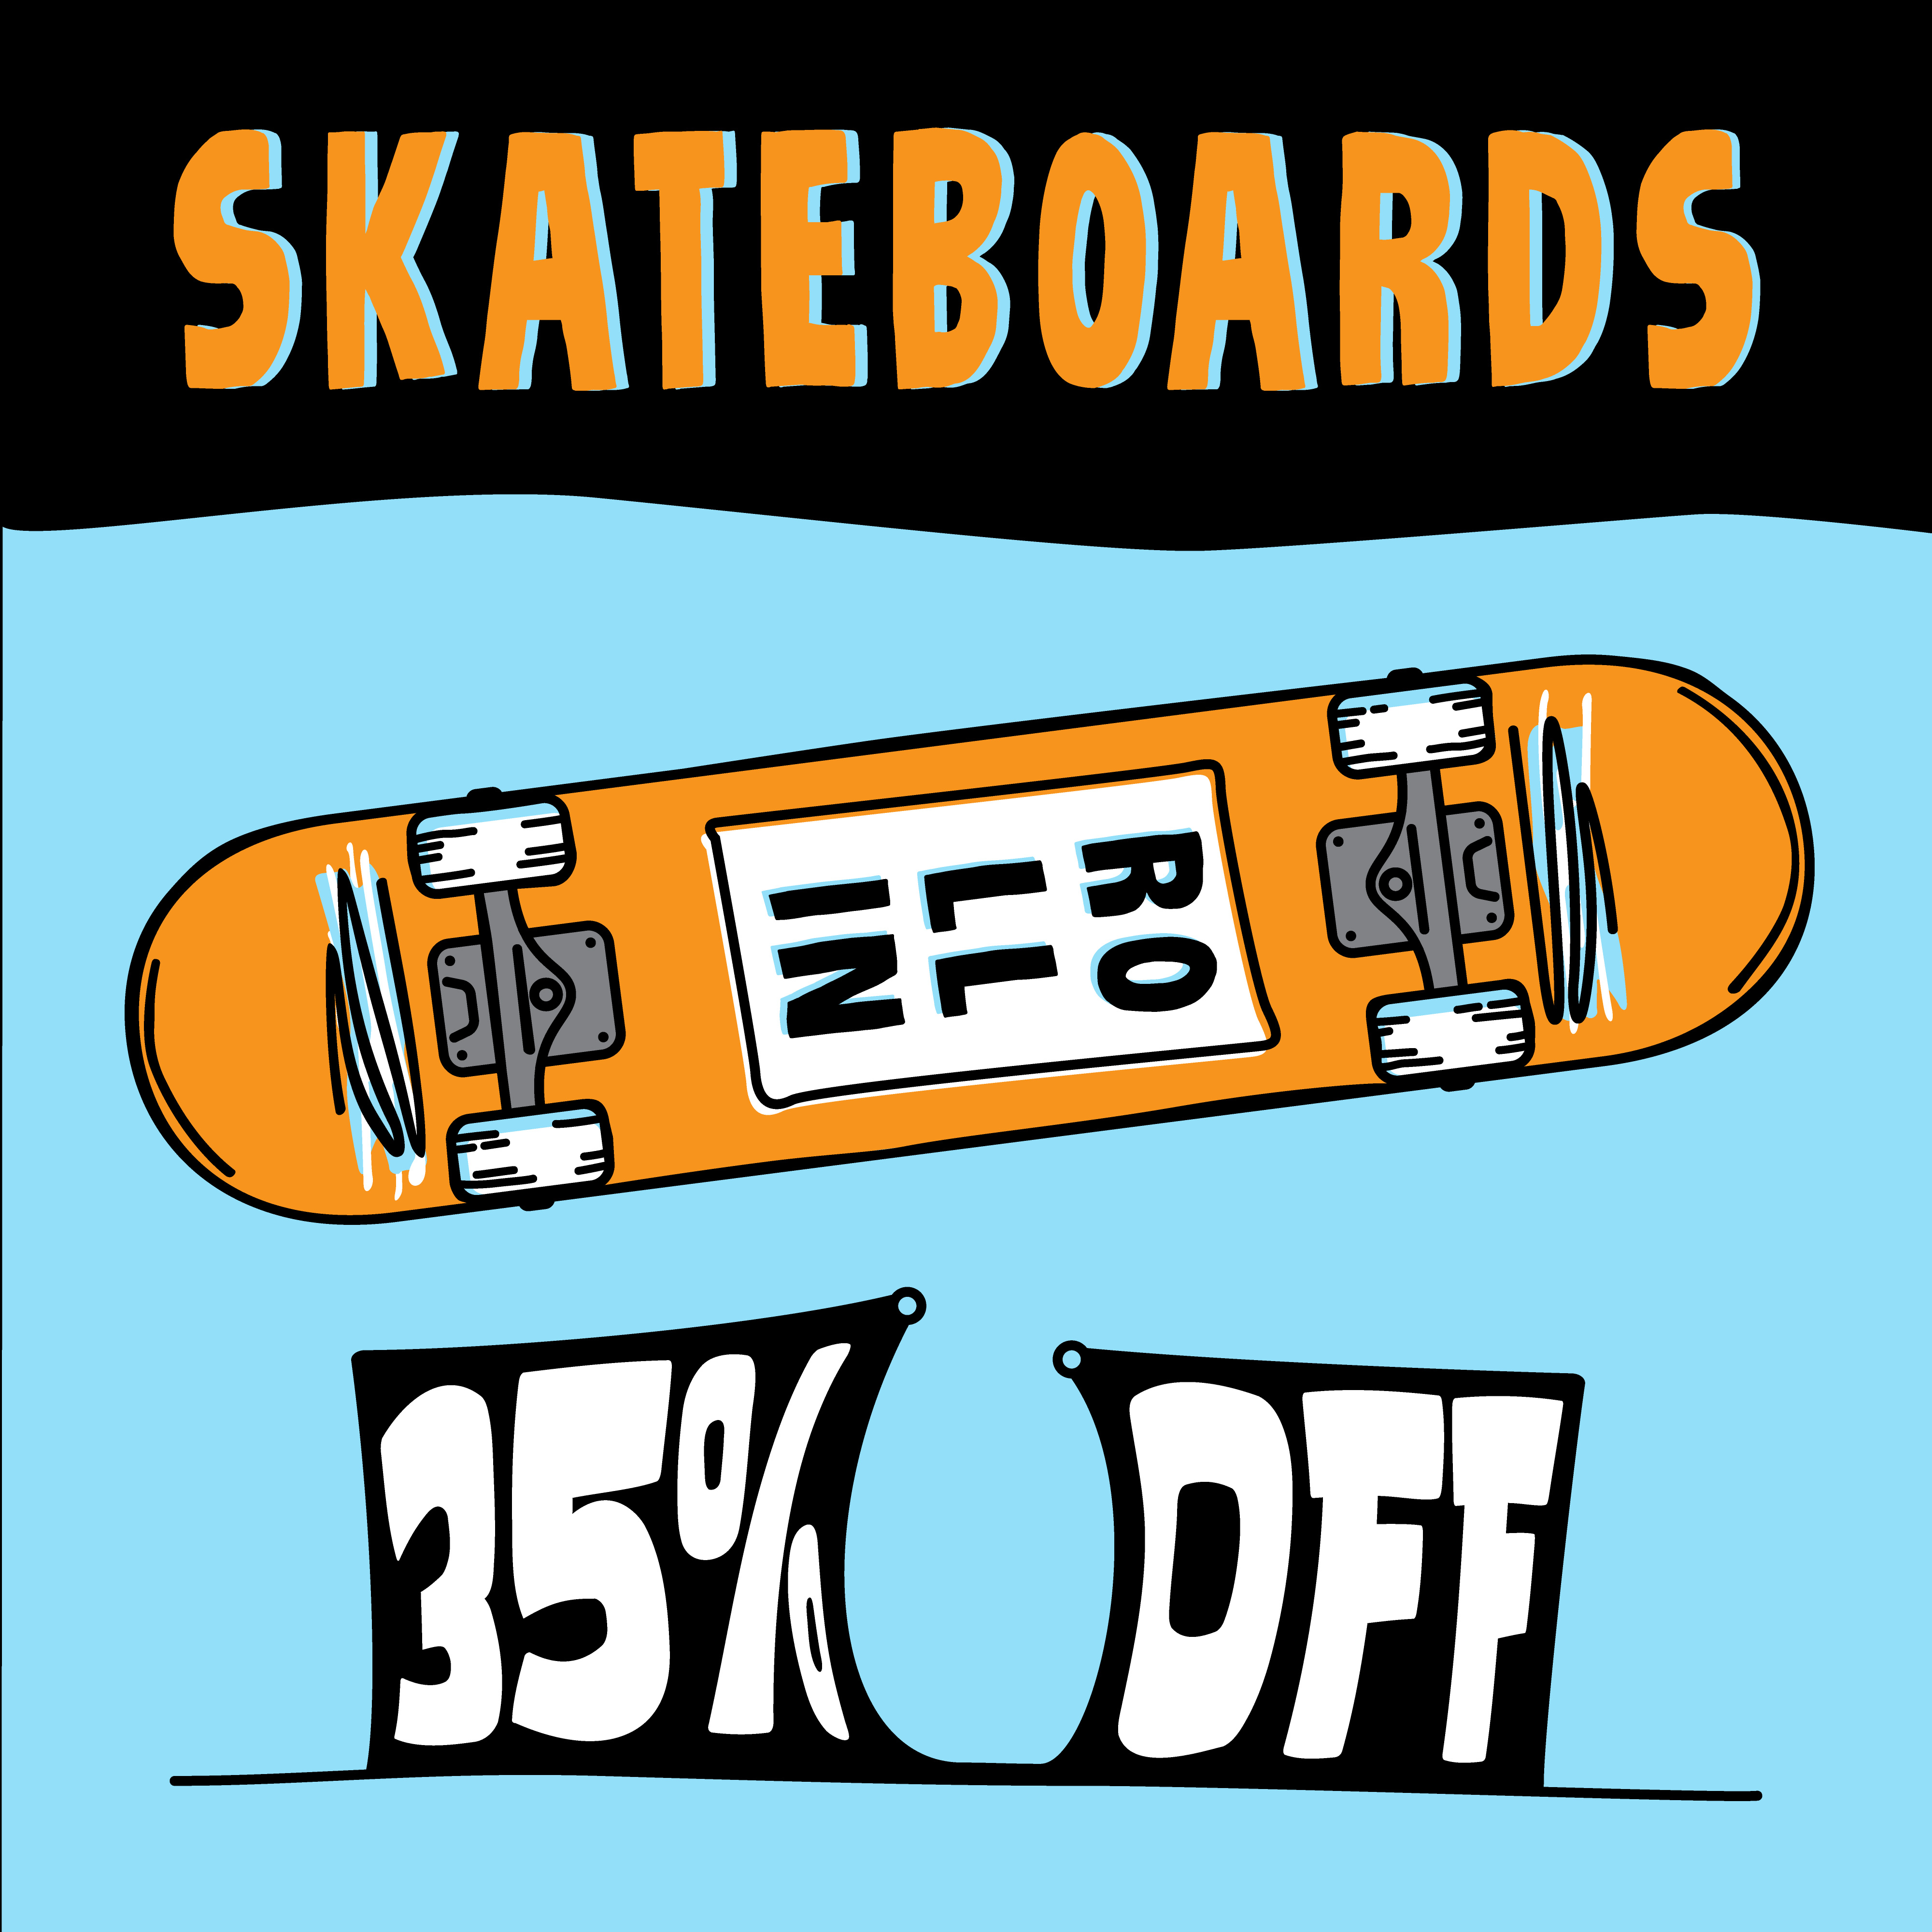 Skateboard 35% de rabais